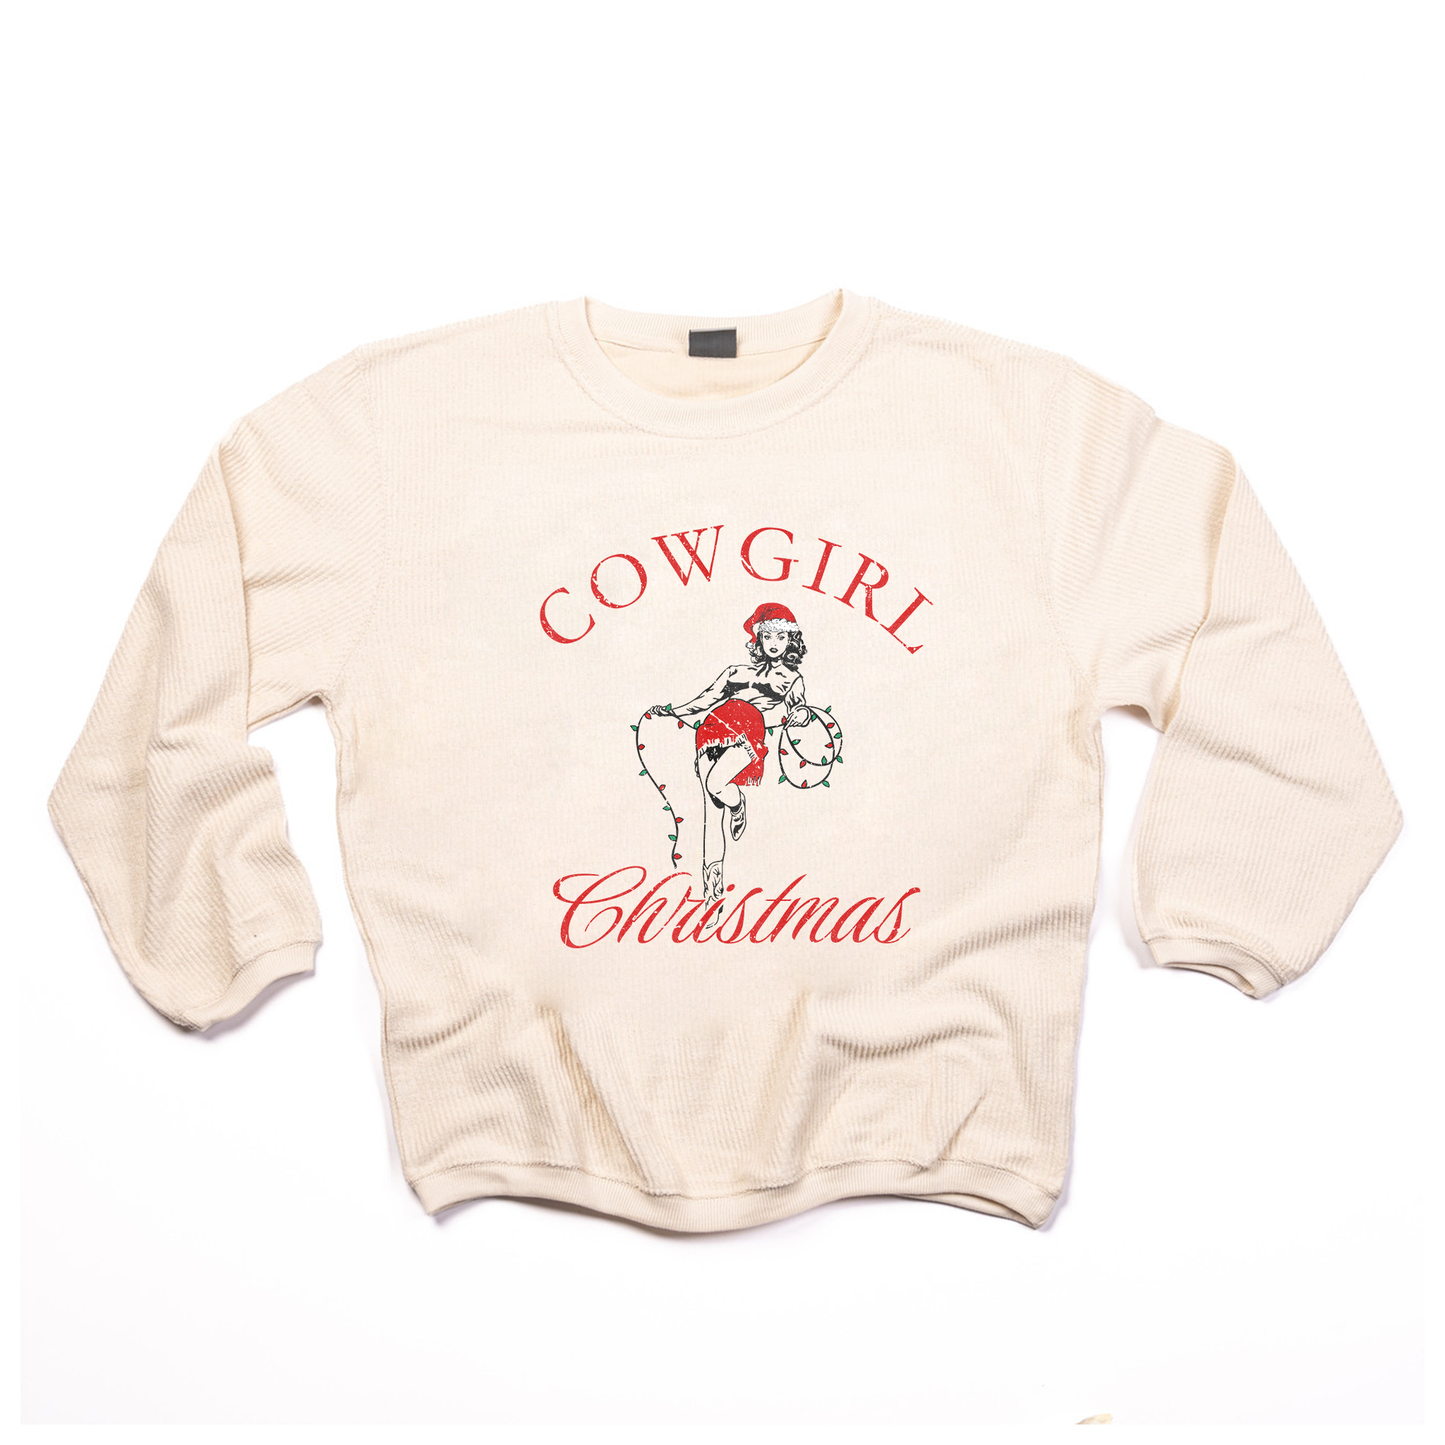 Cowgirl Christmas - Corded Sweatshirt (Ivory)